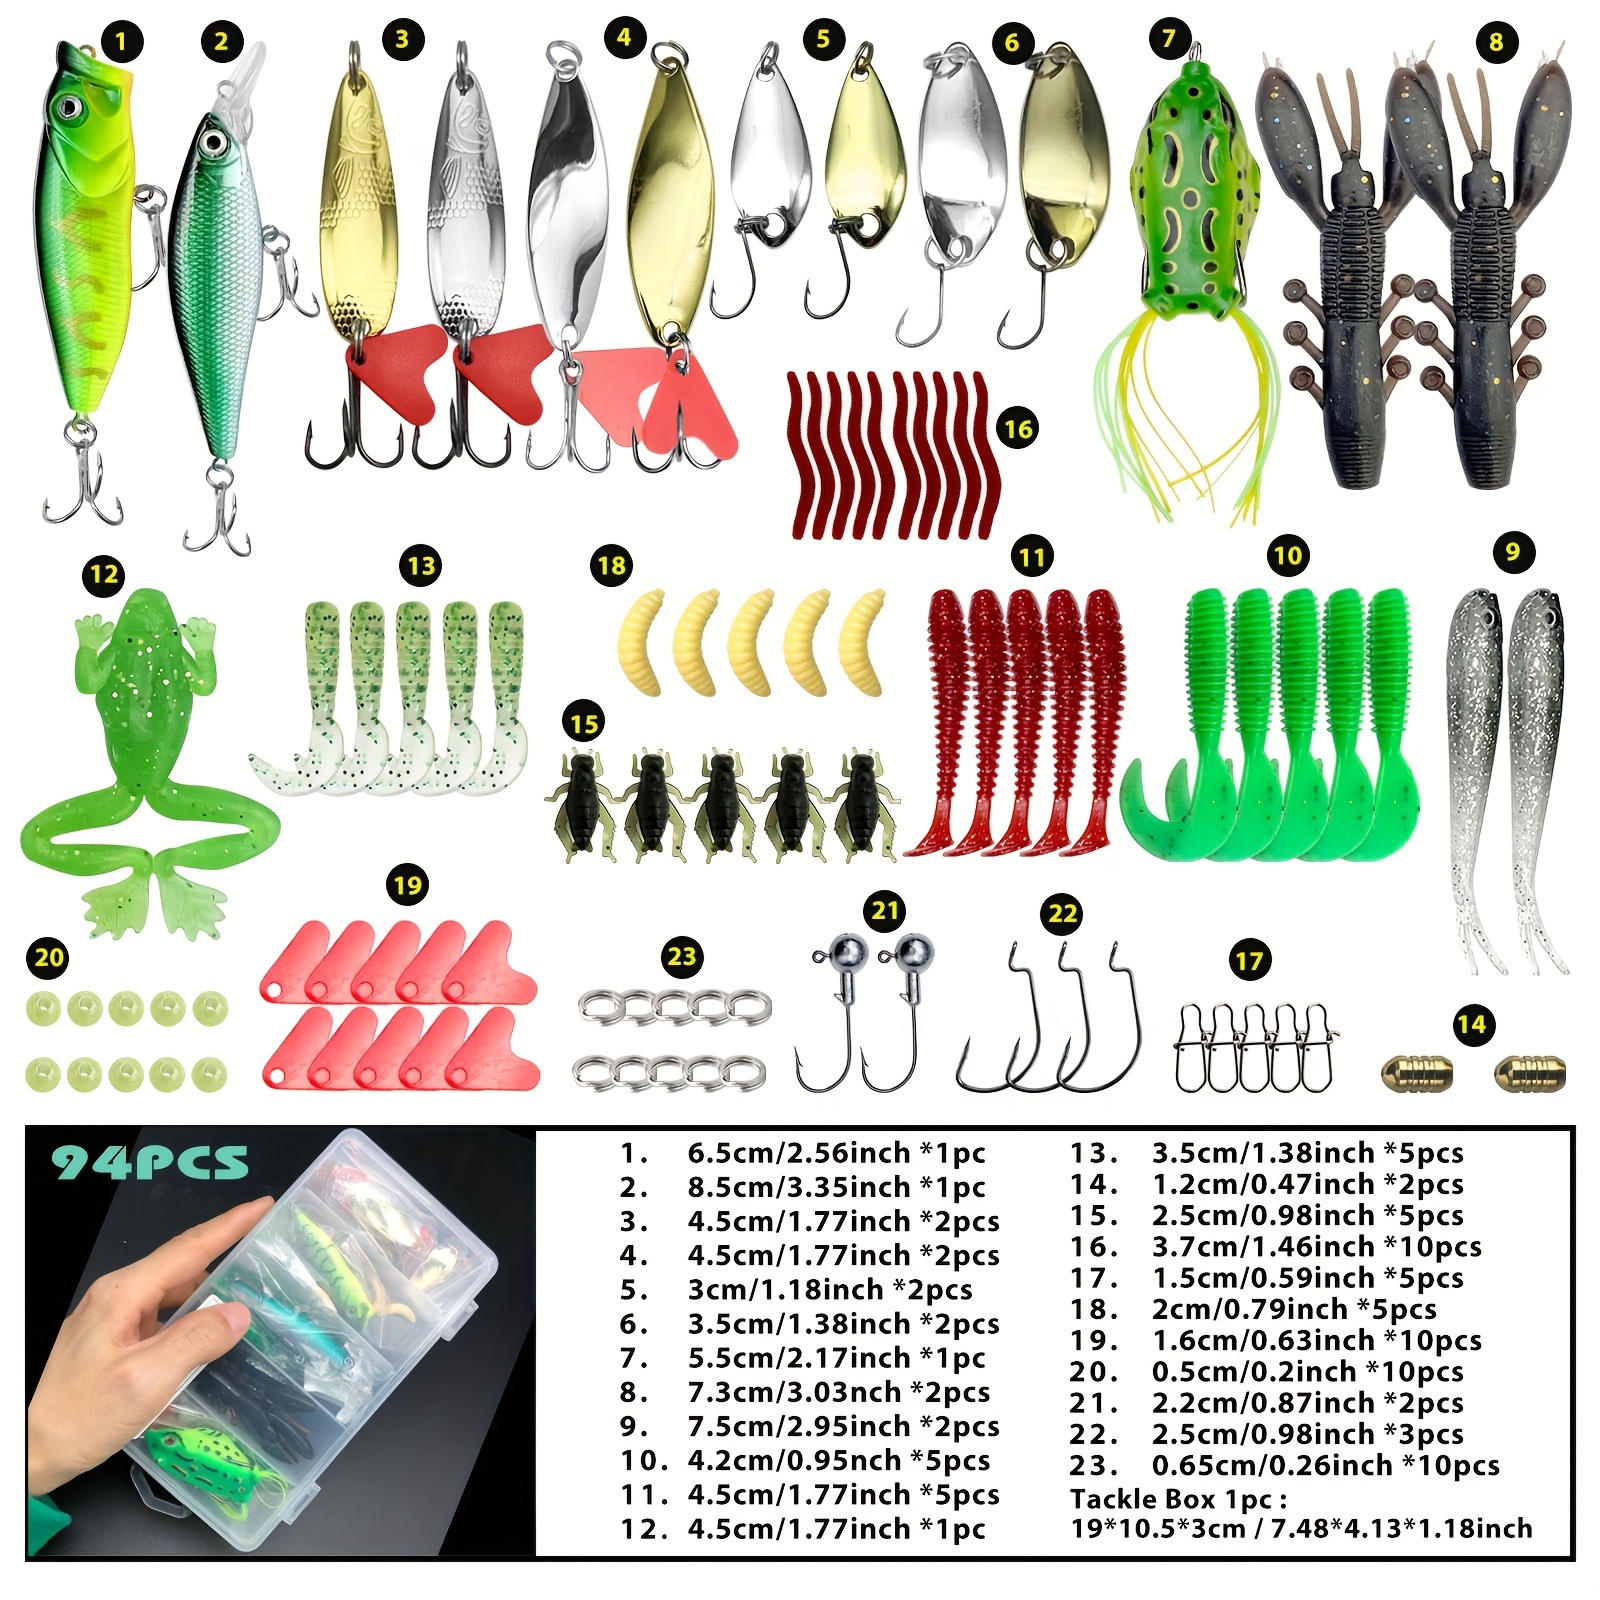 Zerone 10pcs/lot Fishing Lures Kits Wobbler Baits Spoon-Style Artificial  Baits Sequins Bait Fishing Lures Baits Fishing Hard Lures